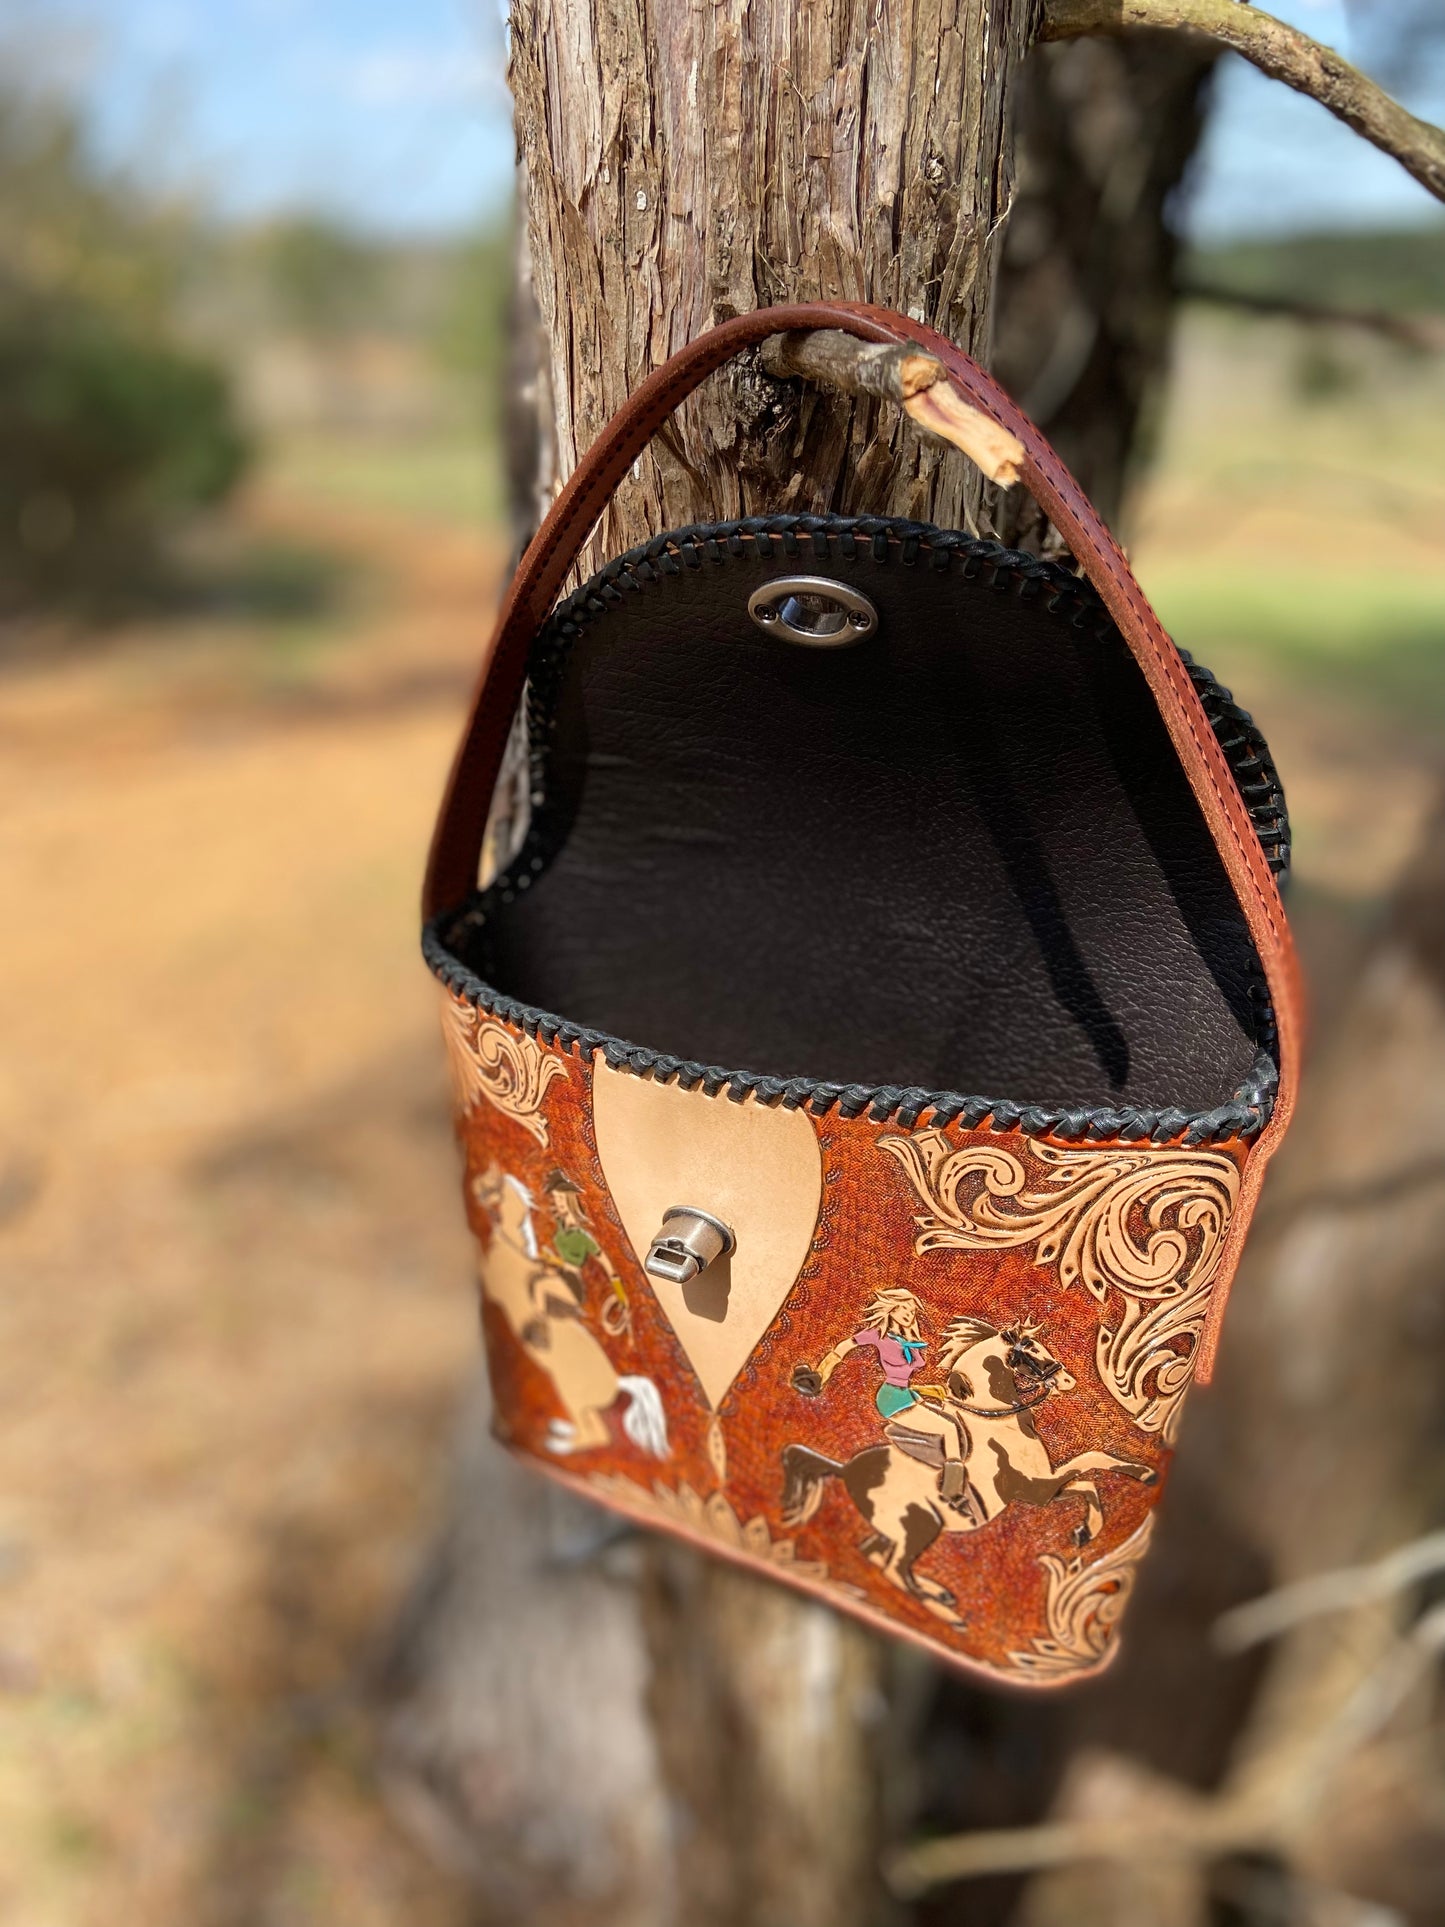 Cowgirl bucket purse